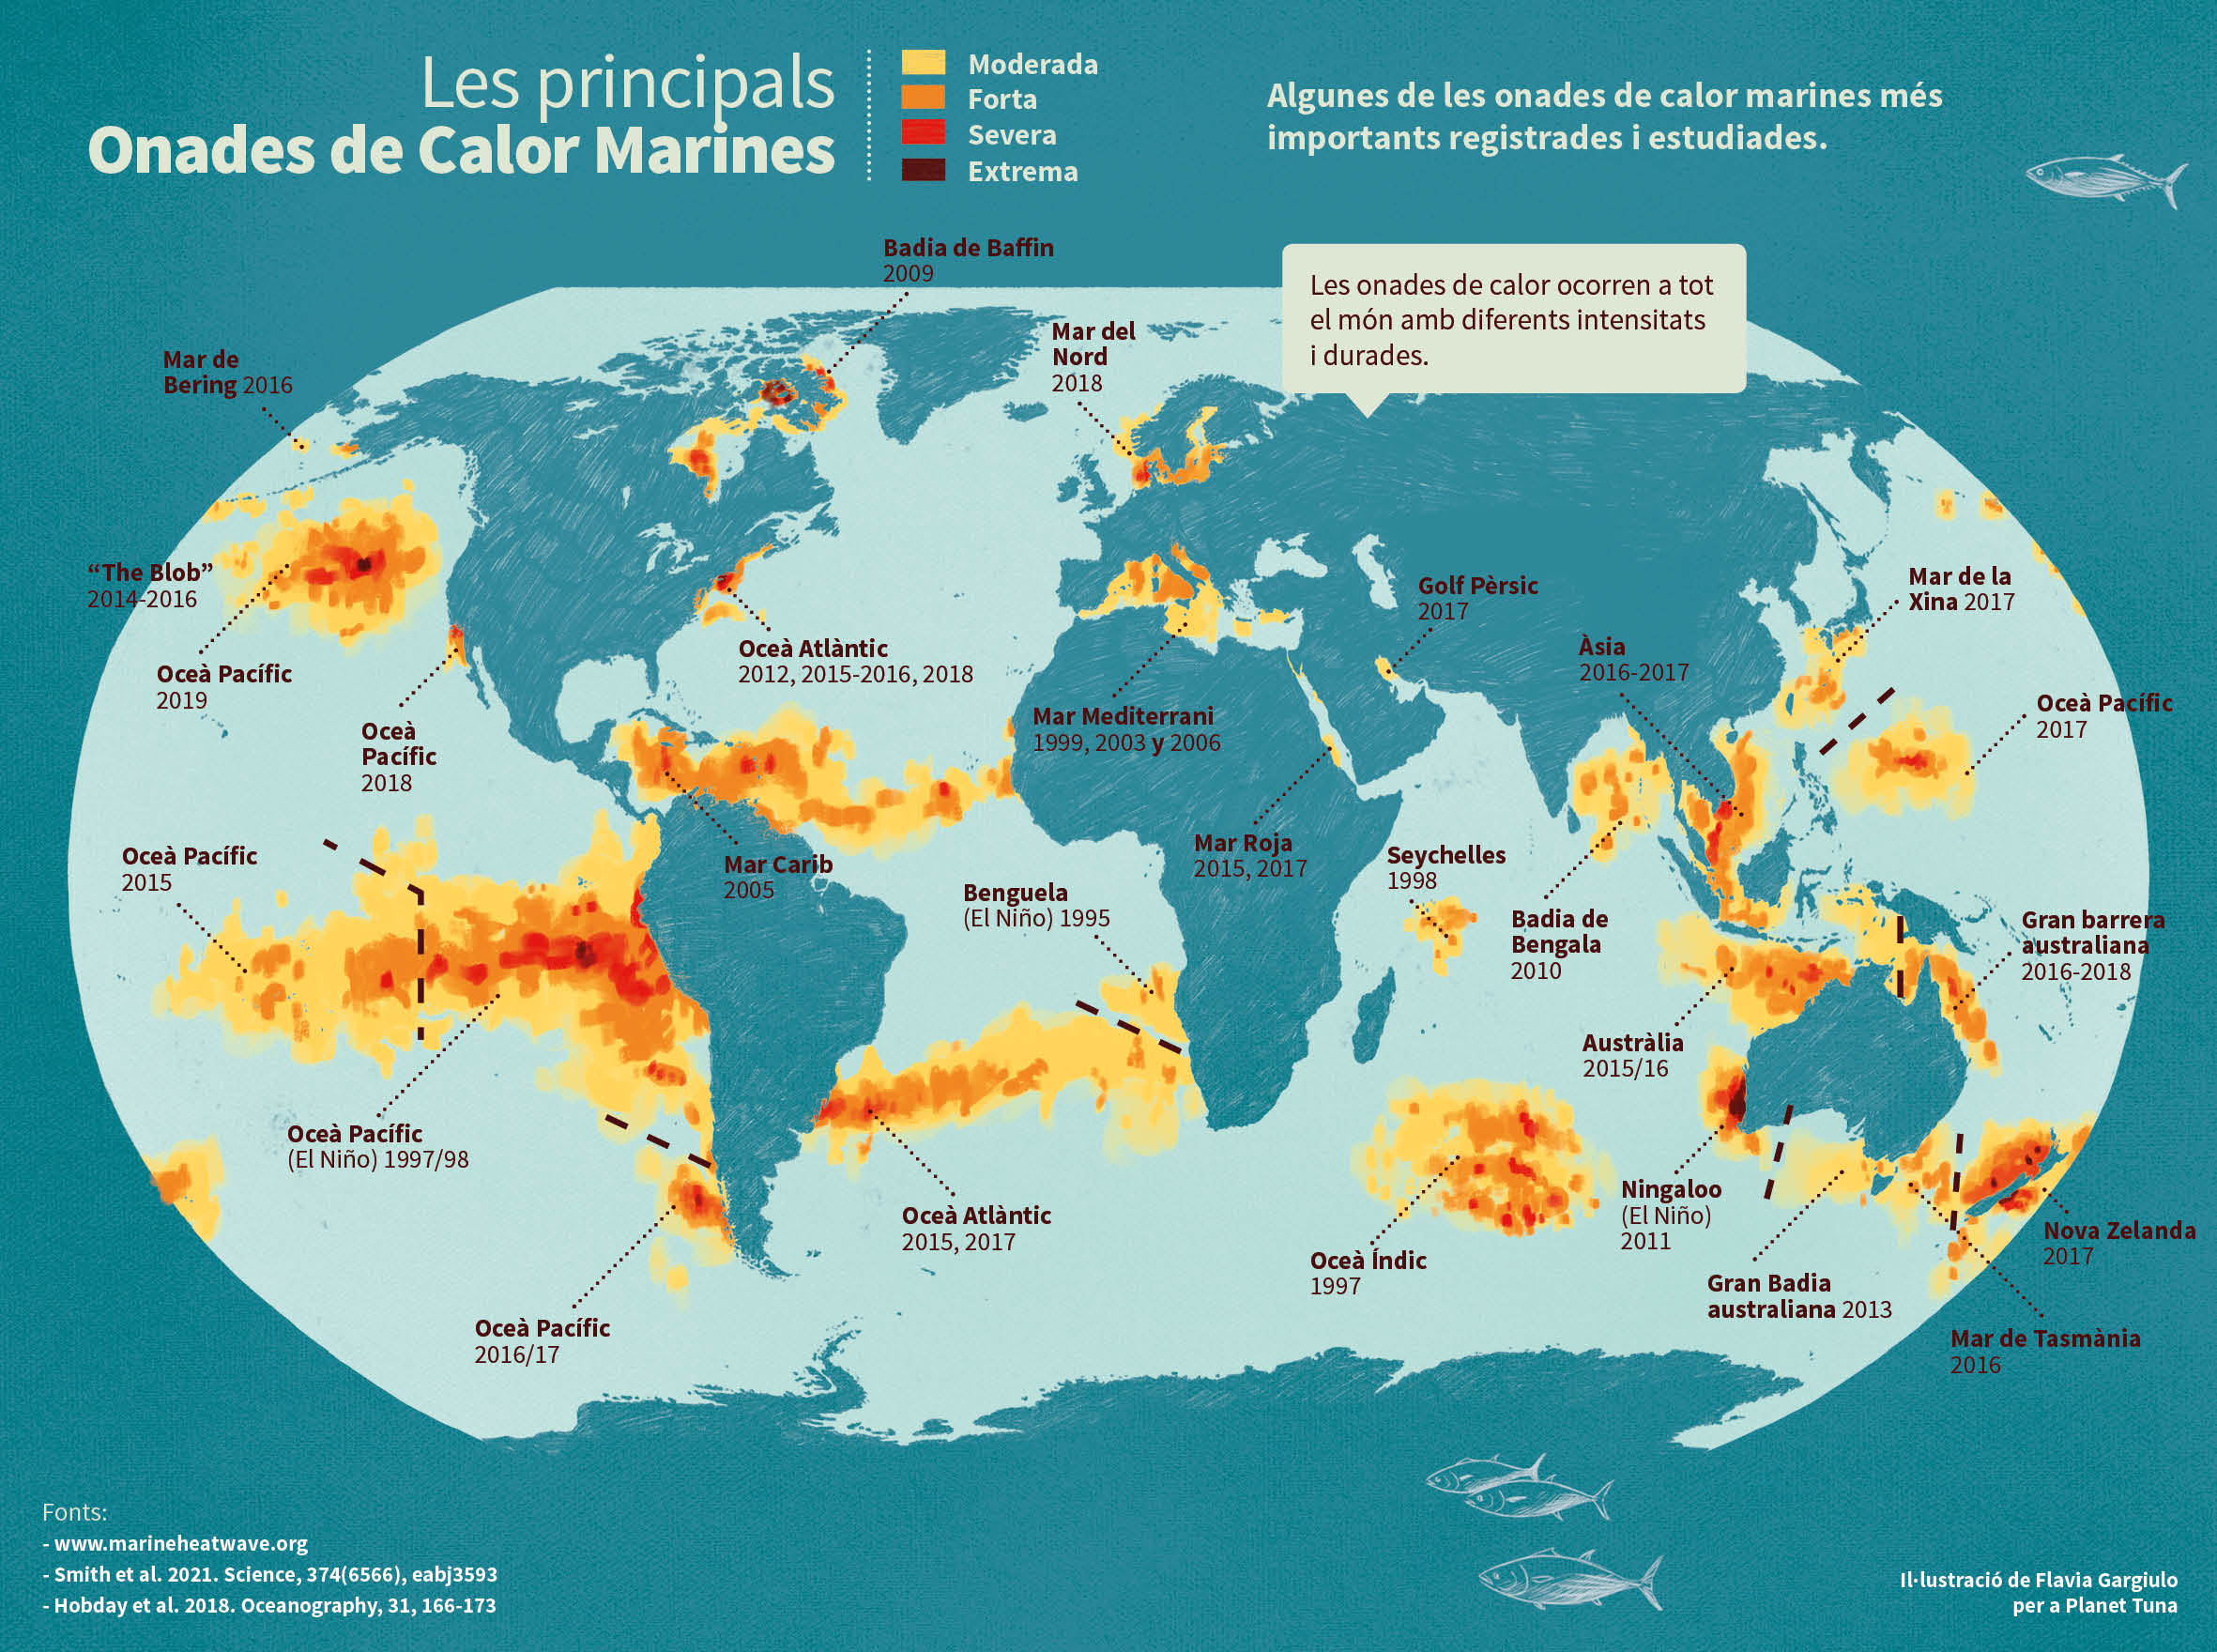 La il·lustració mostra quines han estat les onades de calor marines més importants que hi ha hagut al món. S’hi inclou un gràfic que assenyala l’evolució de les onades de calor marina, la seva intensitat i freqüència en el temps. També se situen al mapa del món les onades de calor marina més importants i la data en què varen tenir lloc.